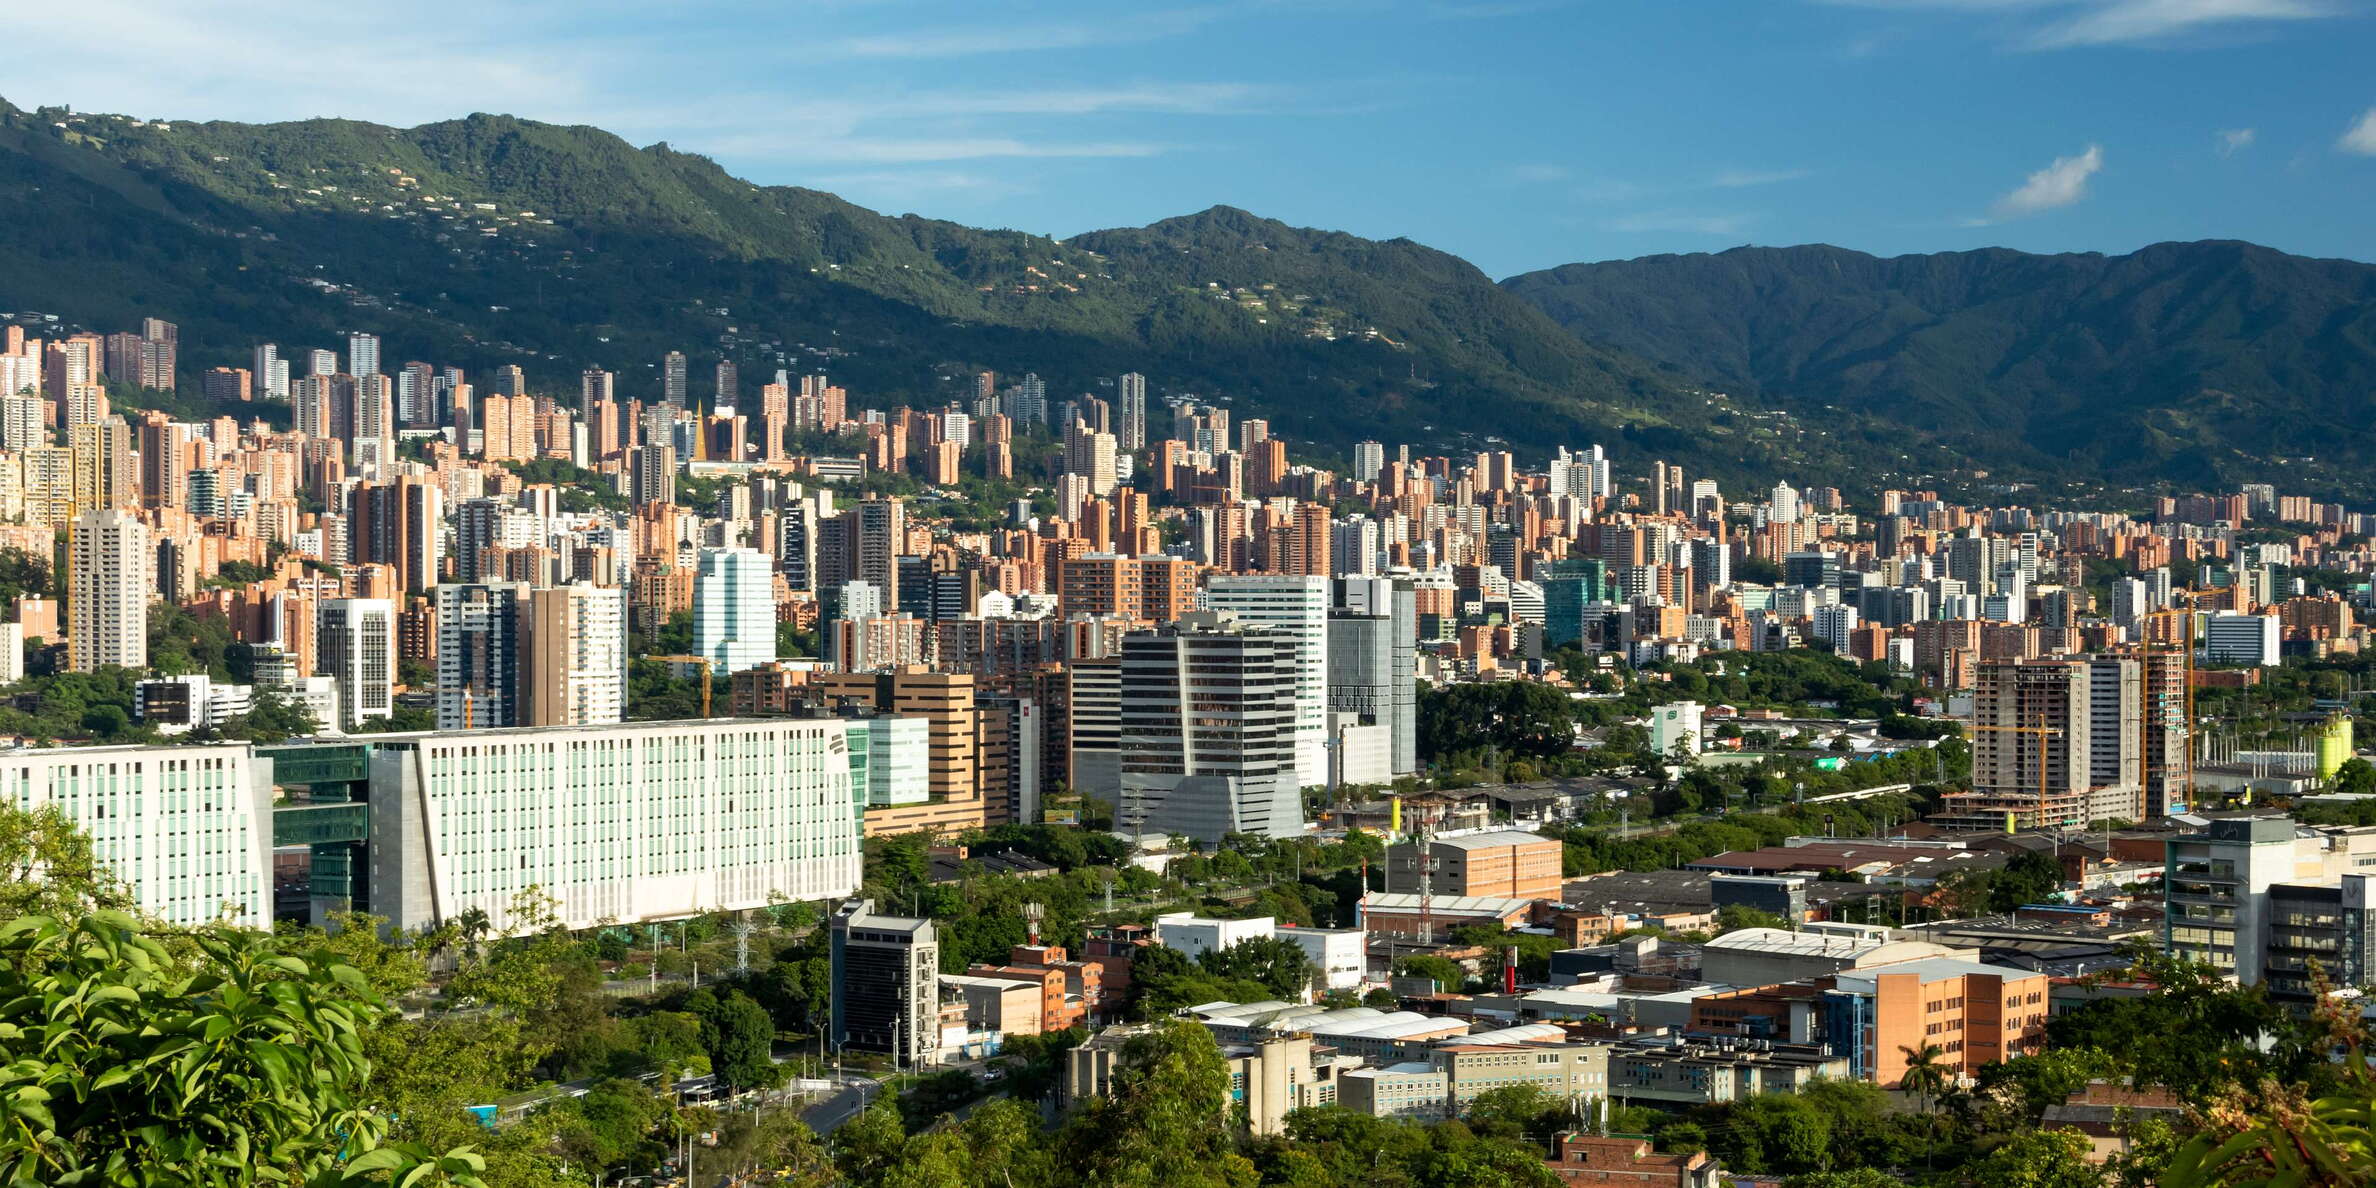 Medellín with El Poblado